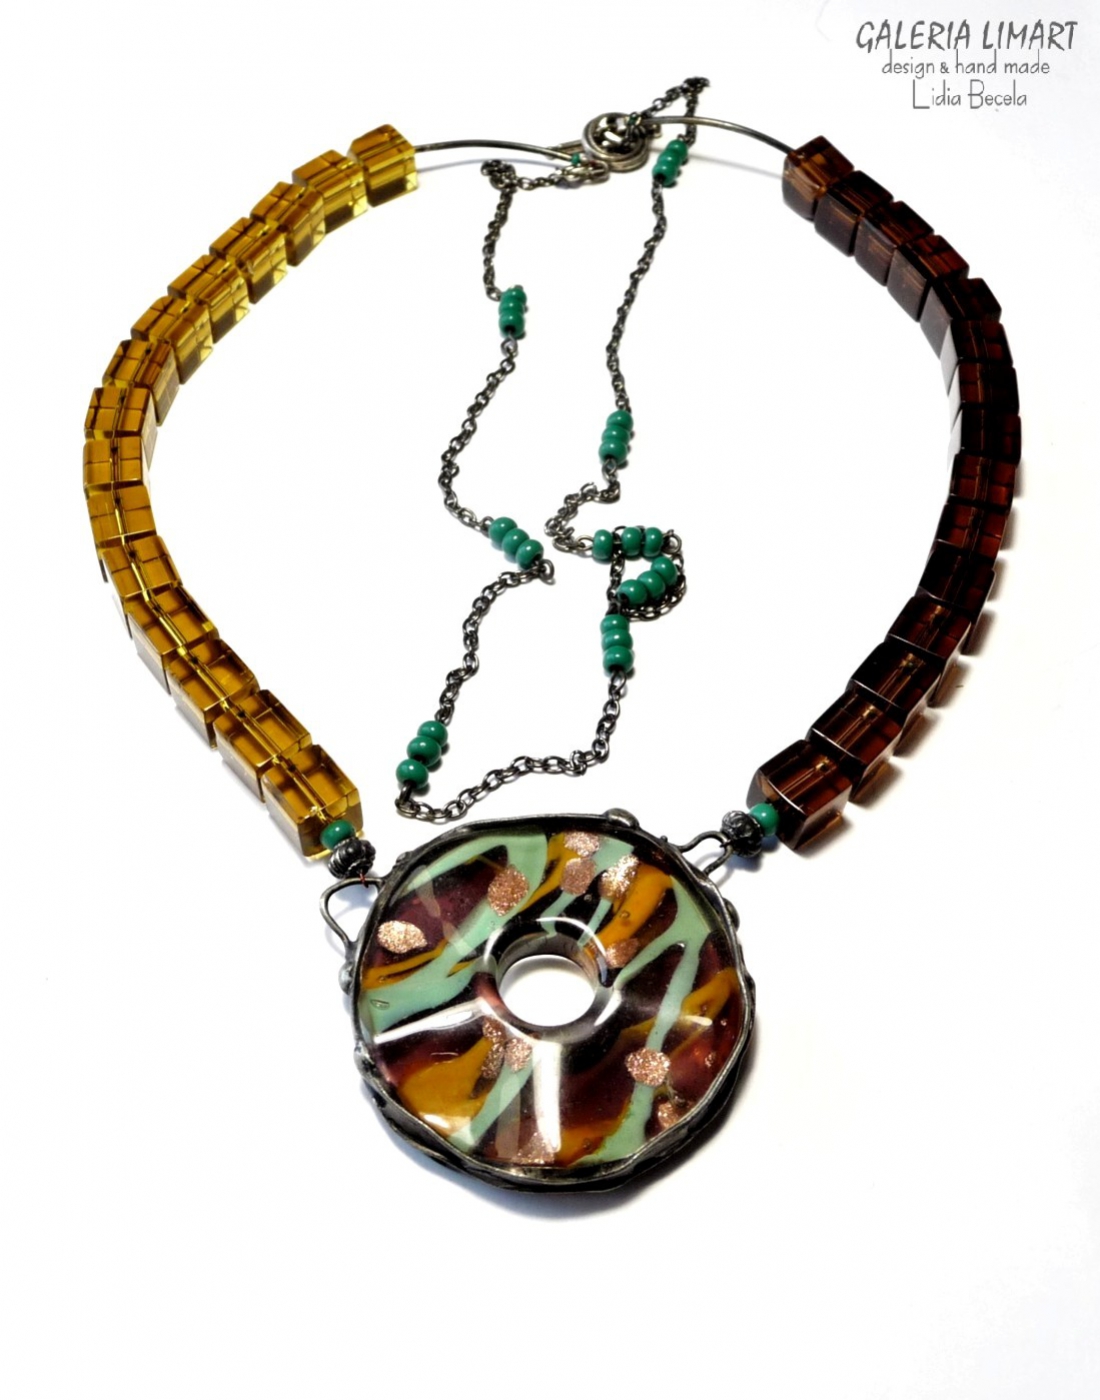 Moja nieco zwariowana kompozycja naszyjnika w duchu modnej biżuterii Boho, szkło weneckie, handmade